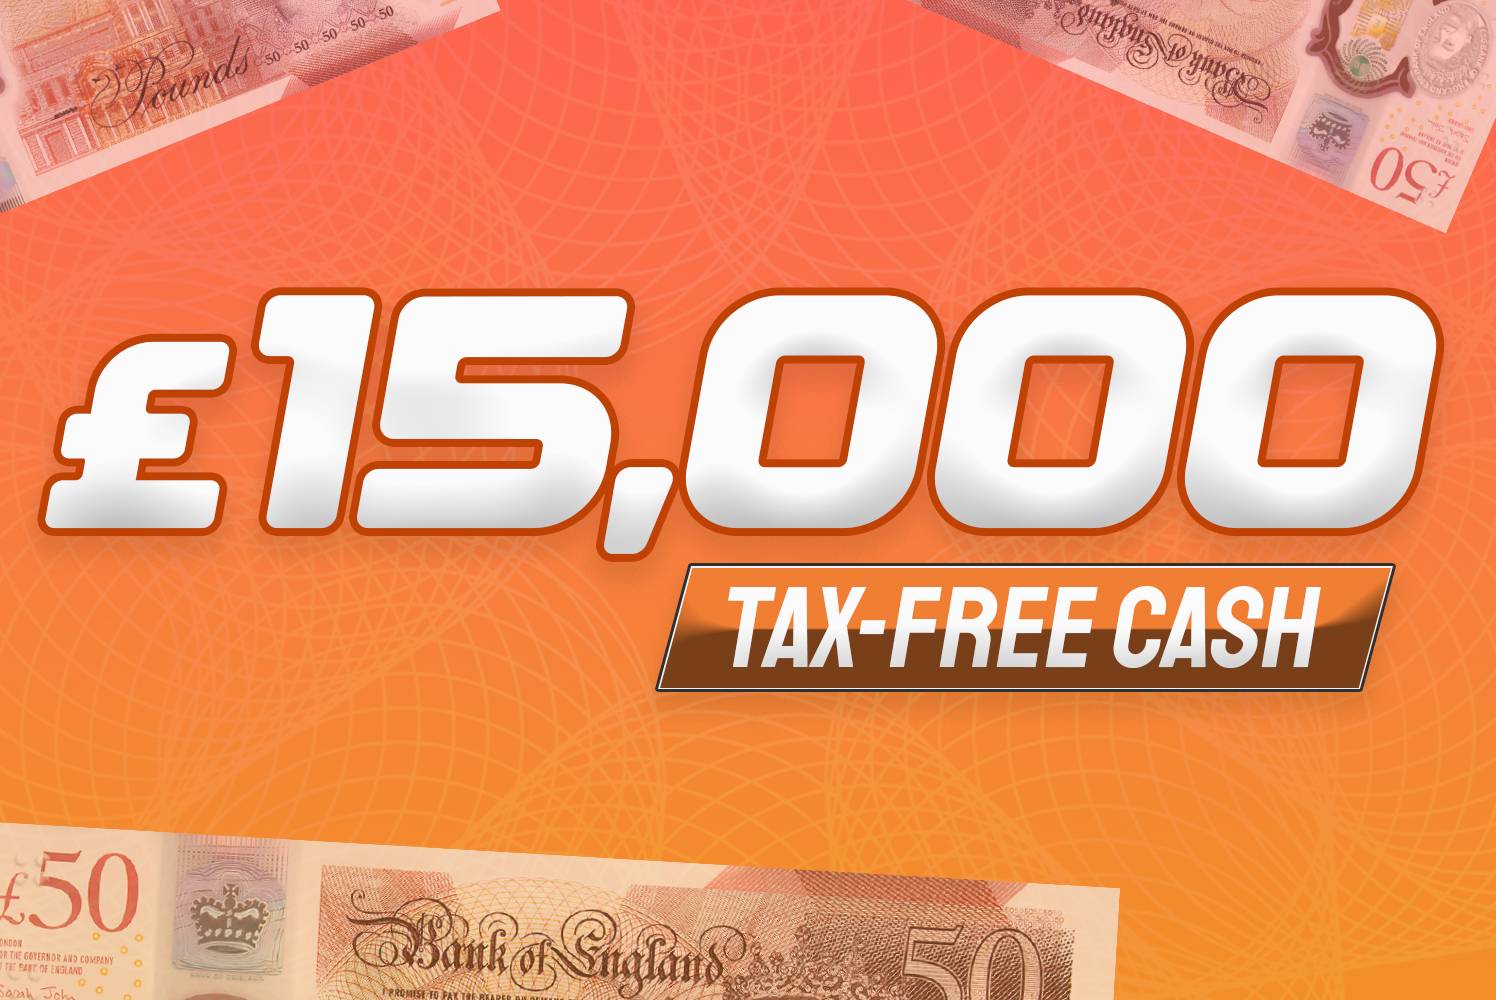 Win £15,000 Tax Free Cash